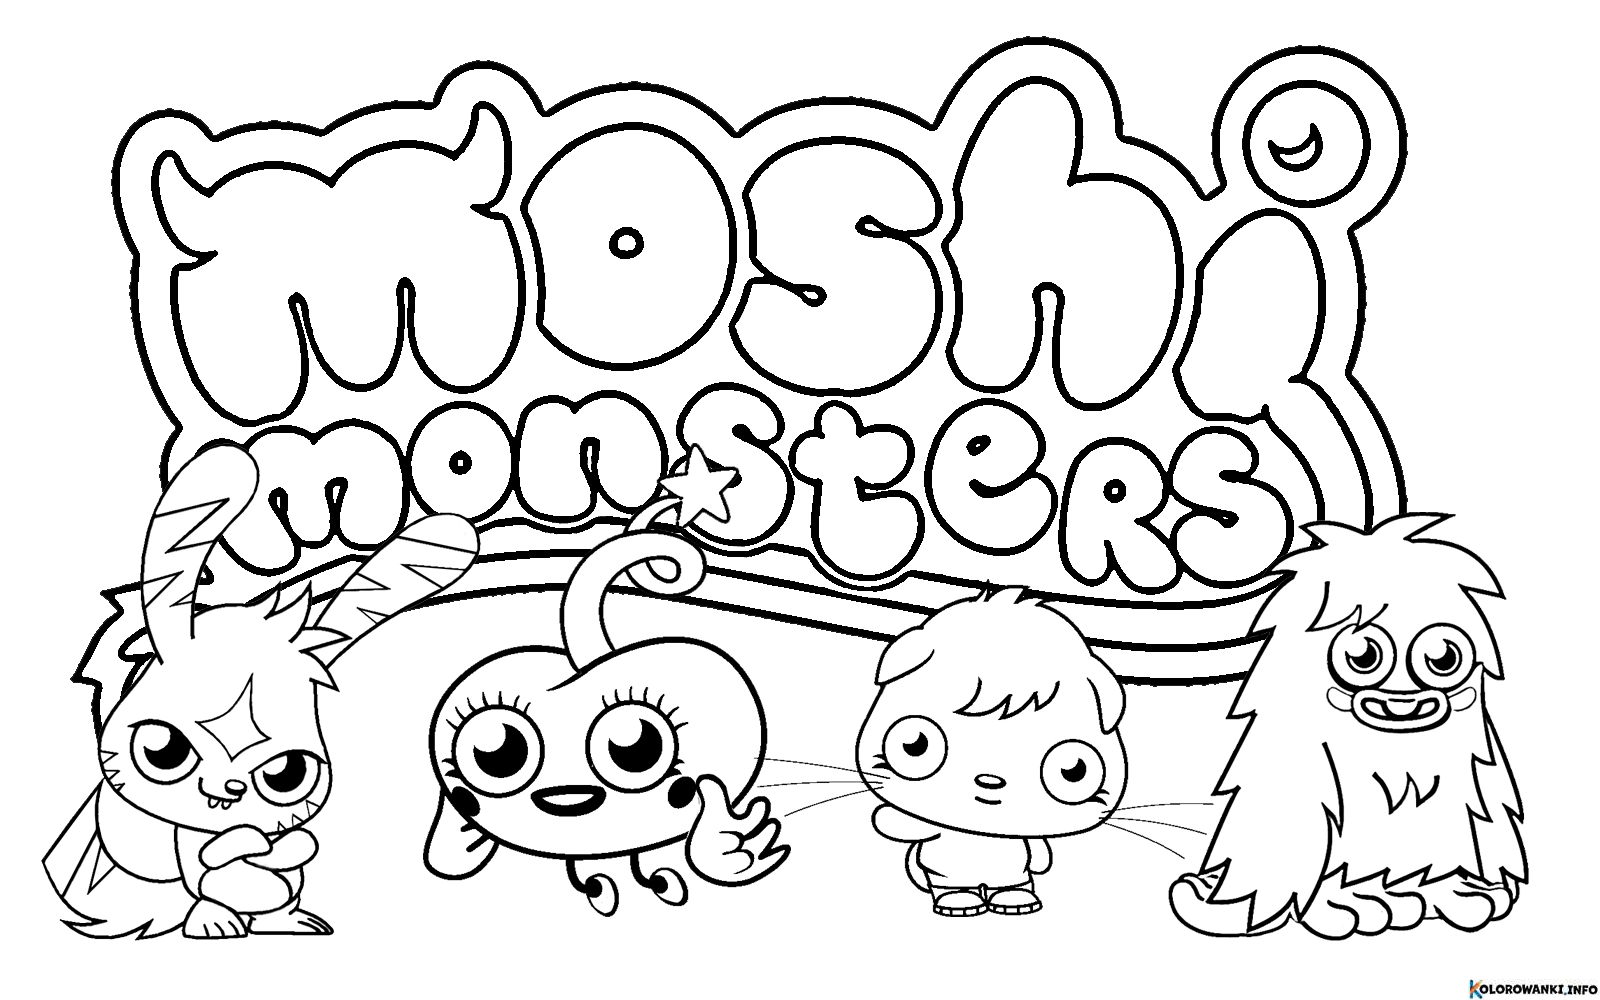 Kolorowanki Moshi Monsters do druku Pobierz lub wydrukuj za